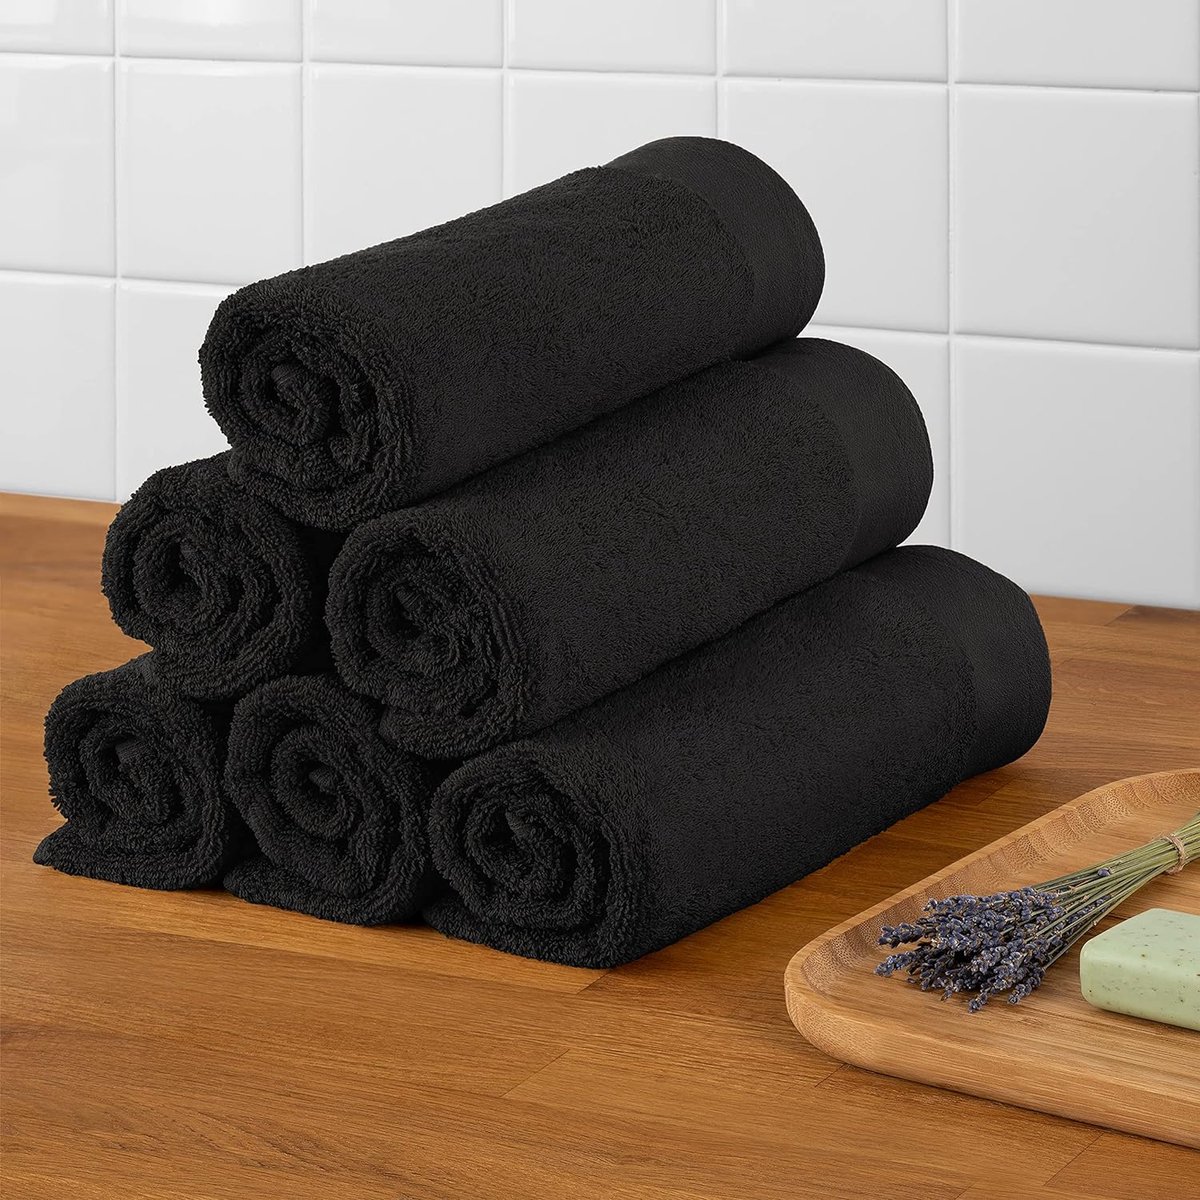 Handdoekenset 2 badhanddoeken 70x140 + 2 handdoeken 50x100 zacht en absorberend 100% katoen Oeko-Tex 100 gecertificeerd zwart